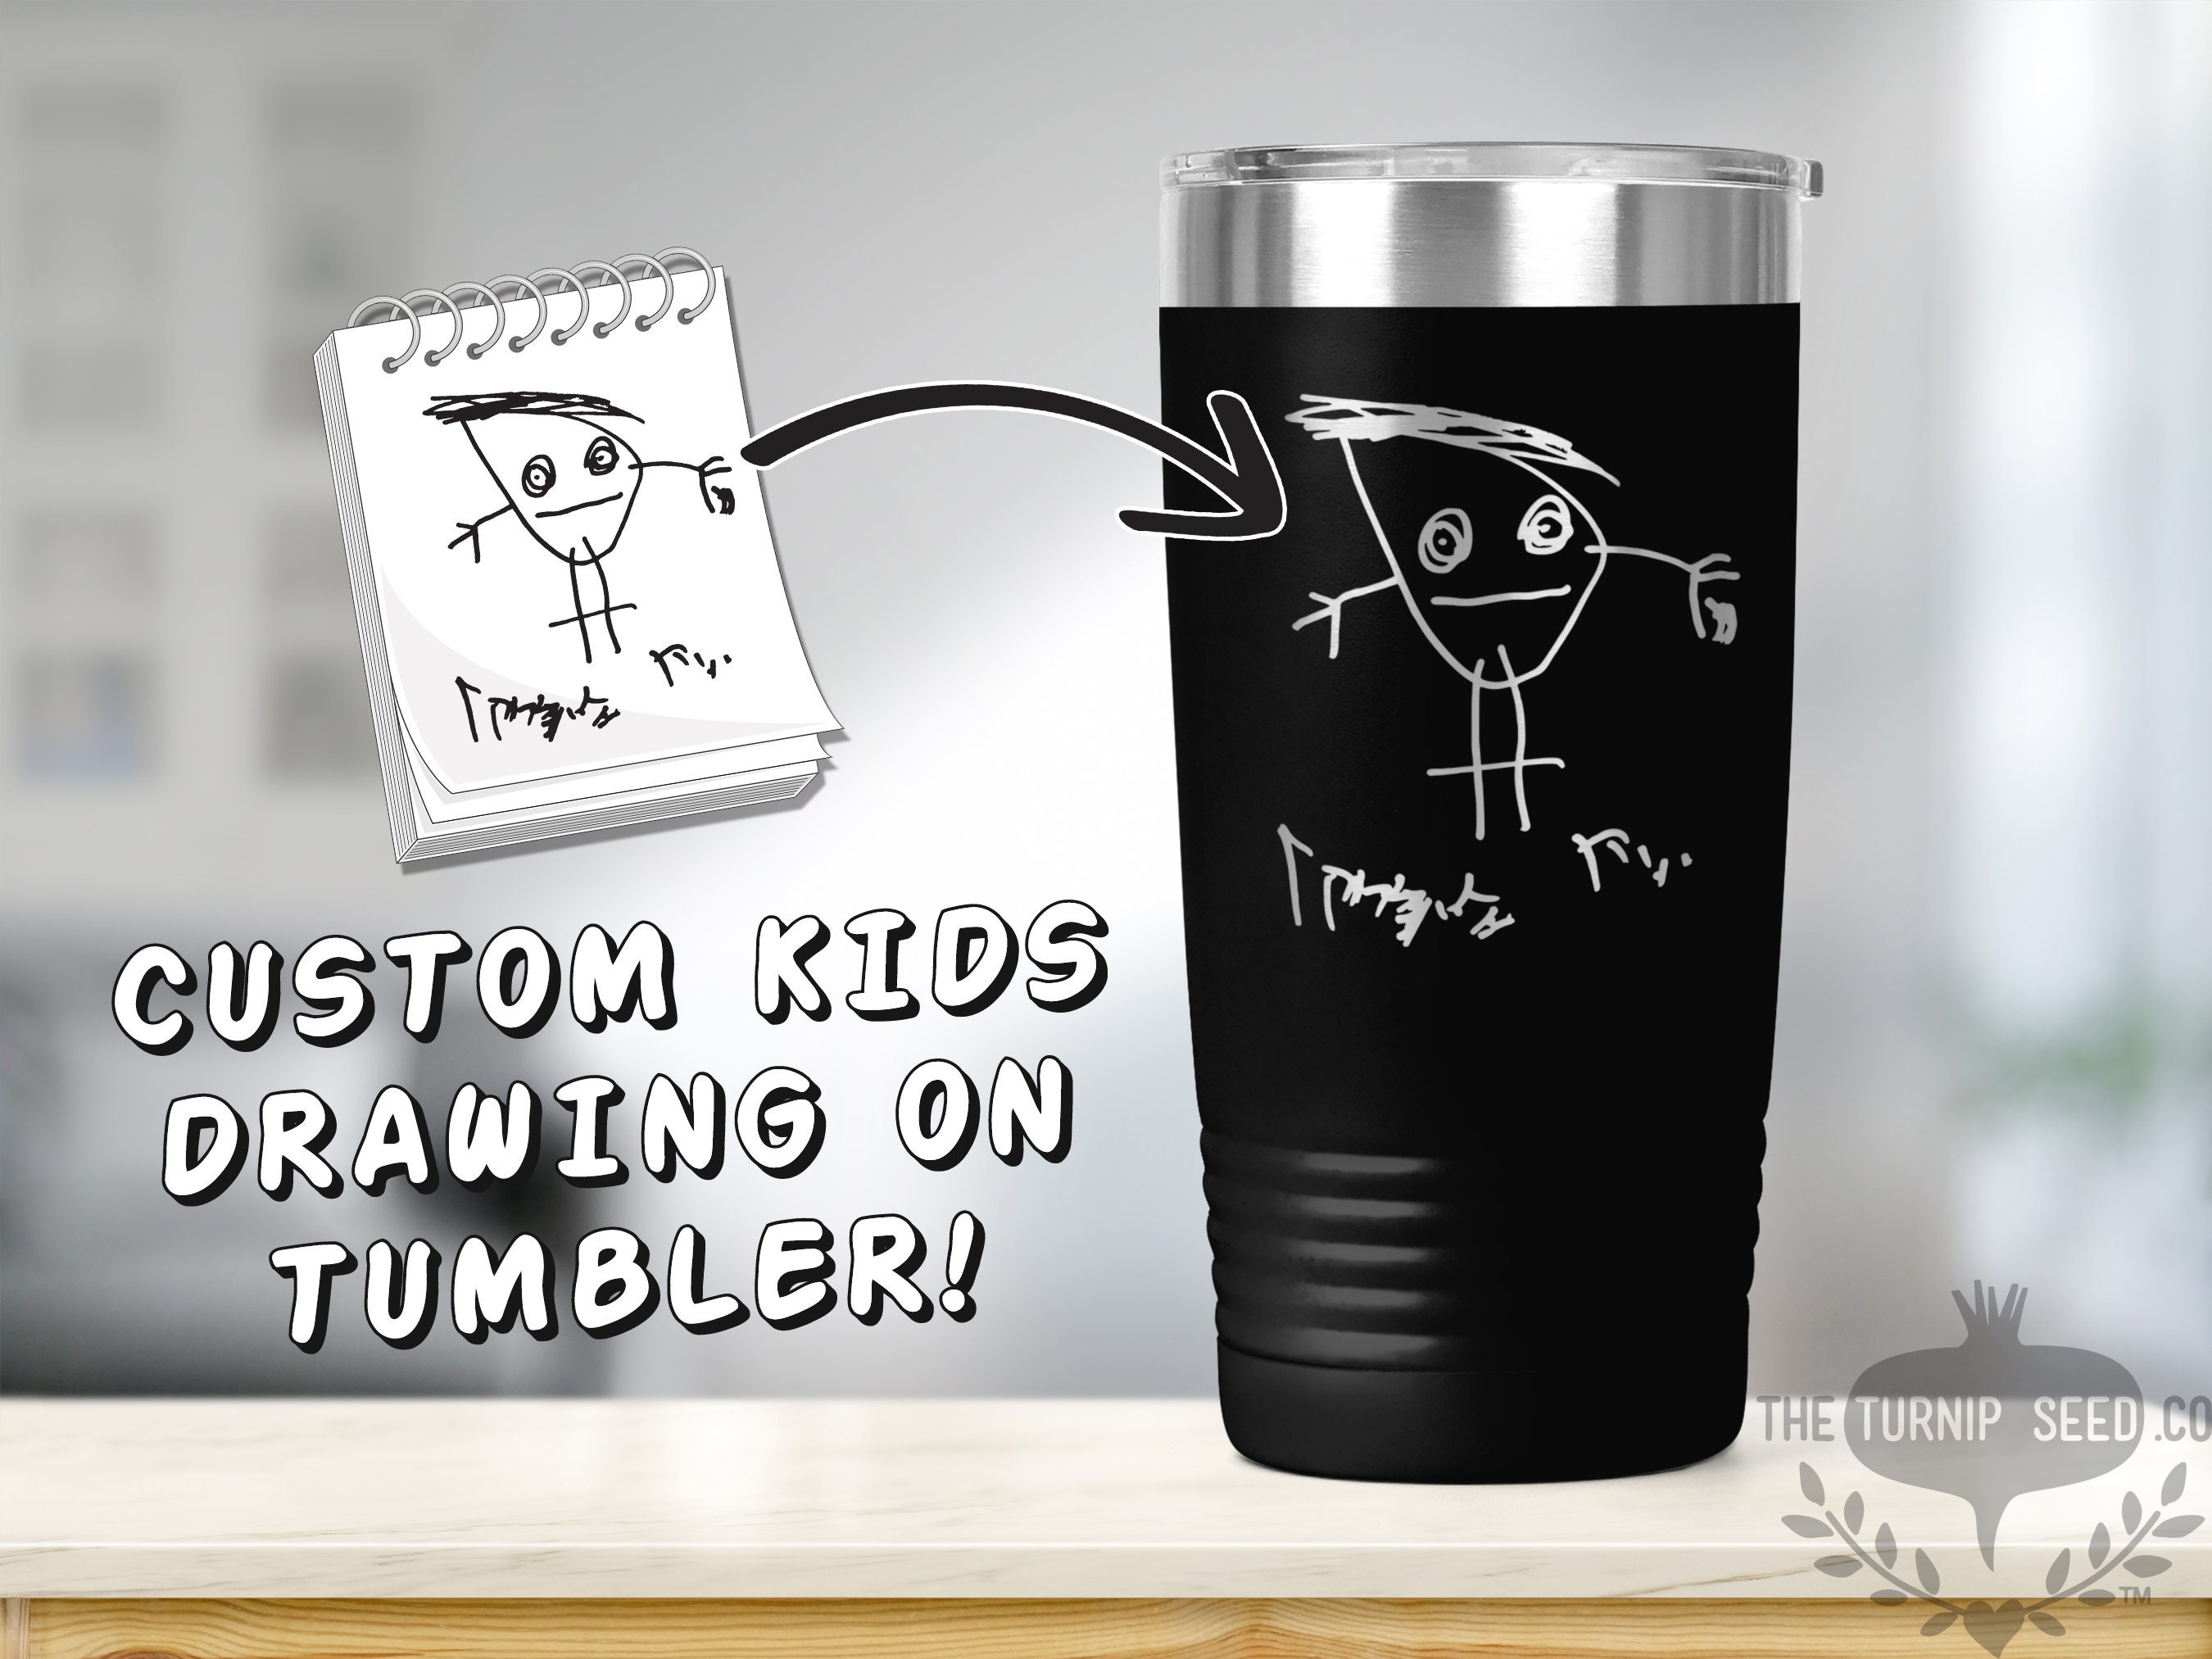 Kids Tumbler  12 oz – Custom Branding